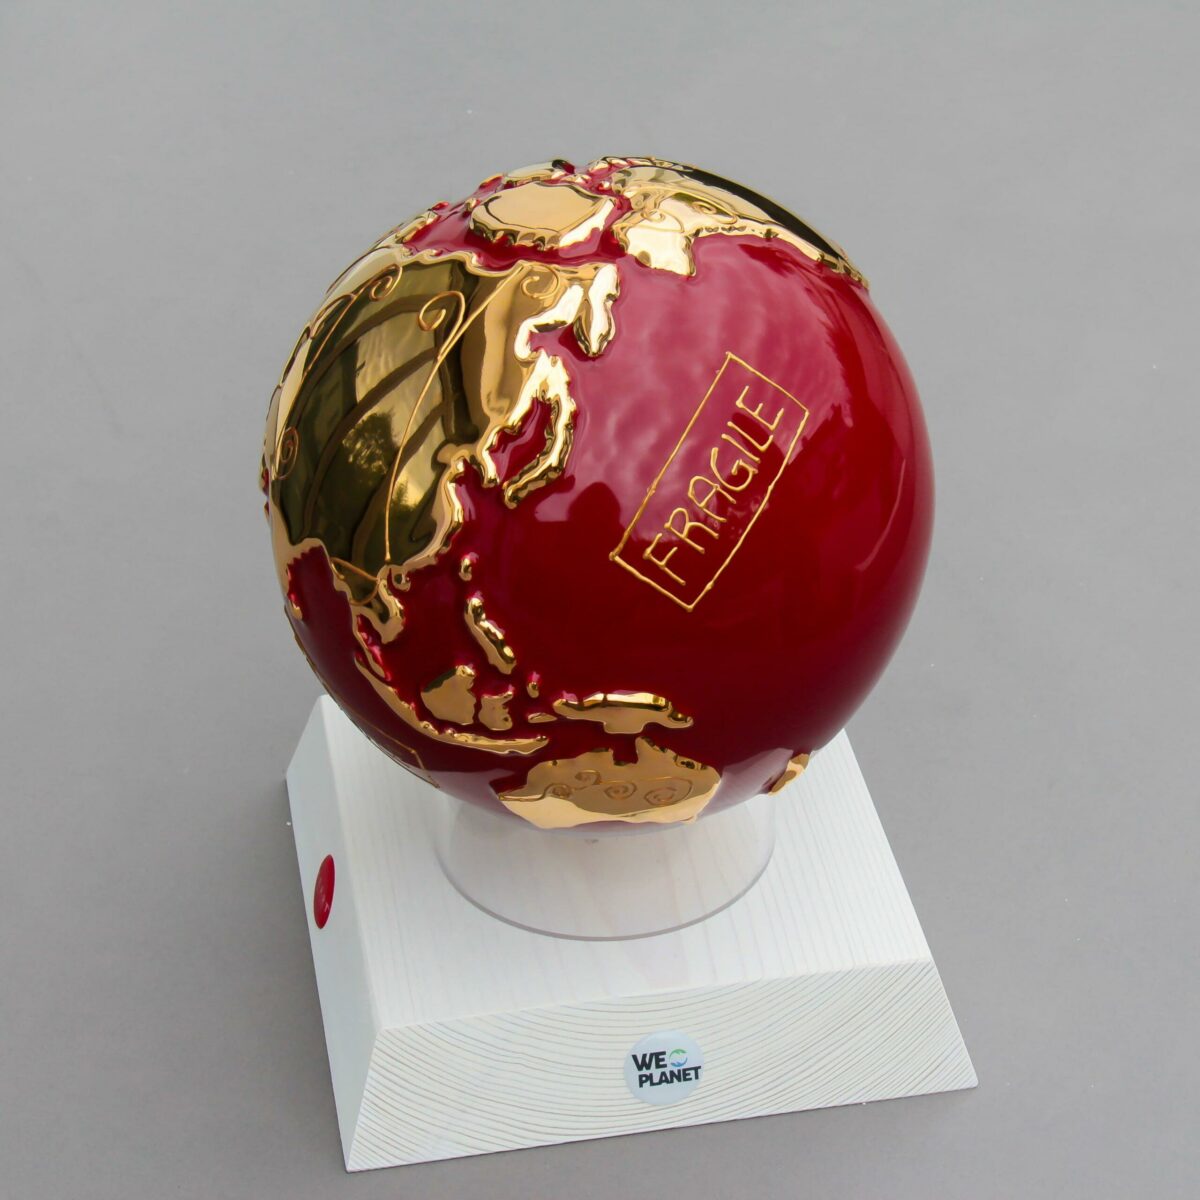 globo in ceramica rosso rappresentante la terra con la scritta "Fragile" dorata